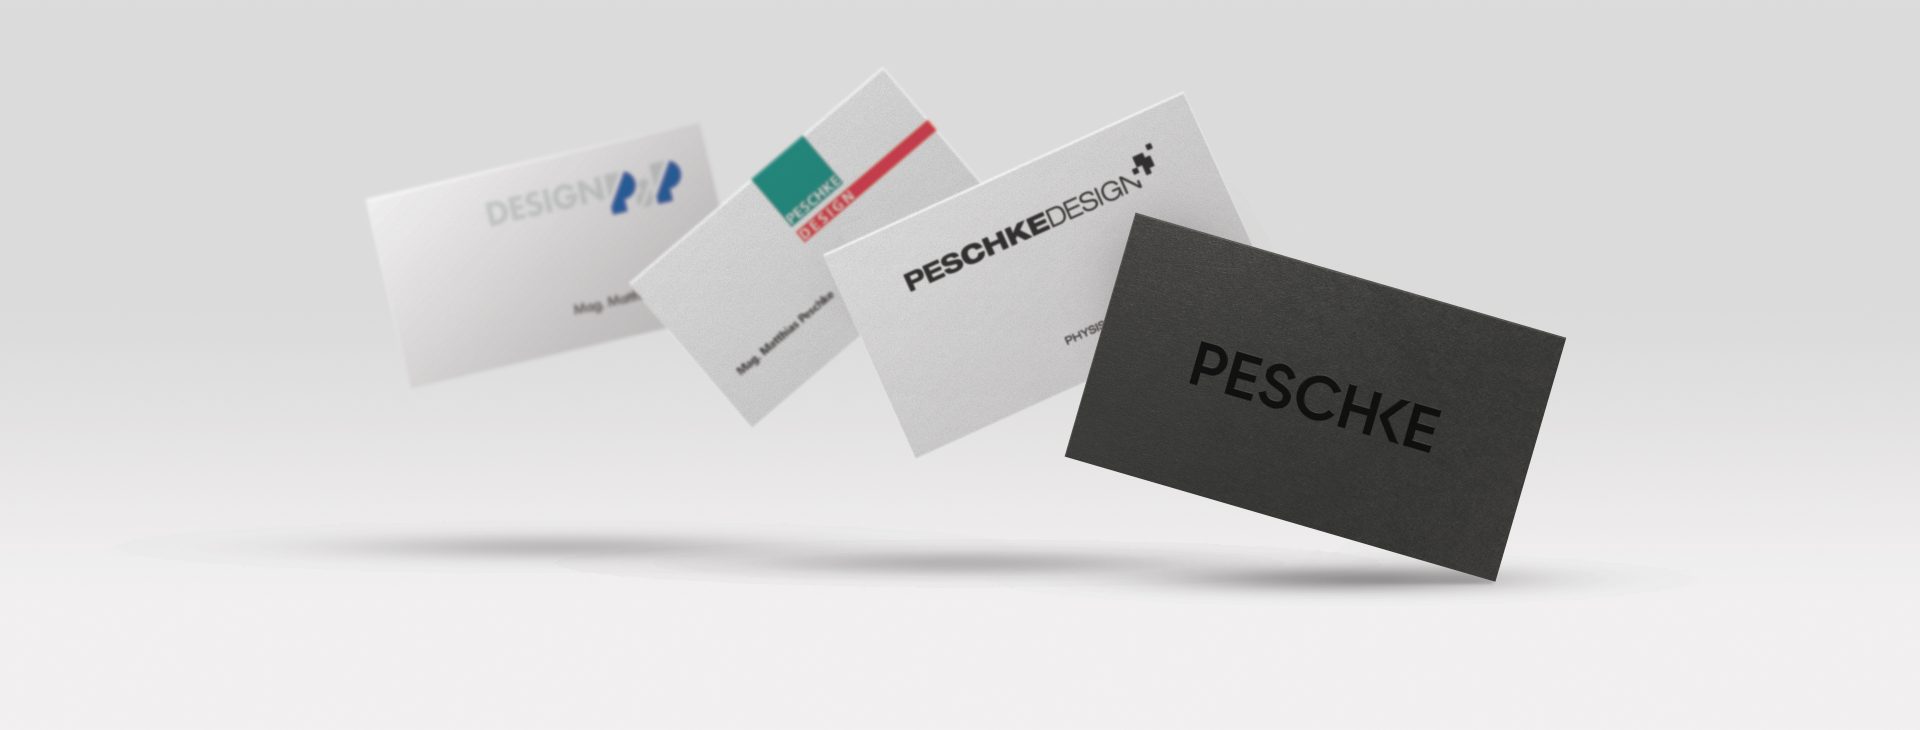 Peschke Peschke business card evolution over time